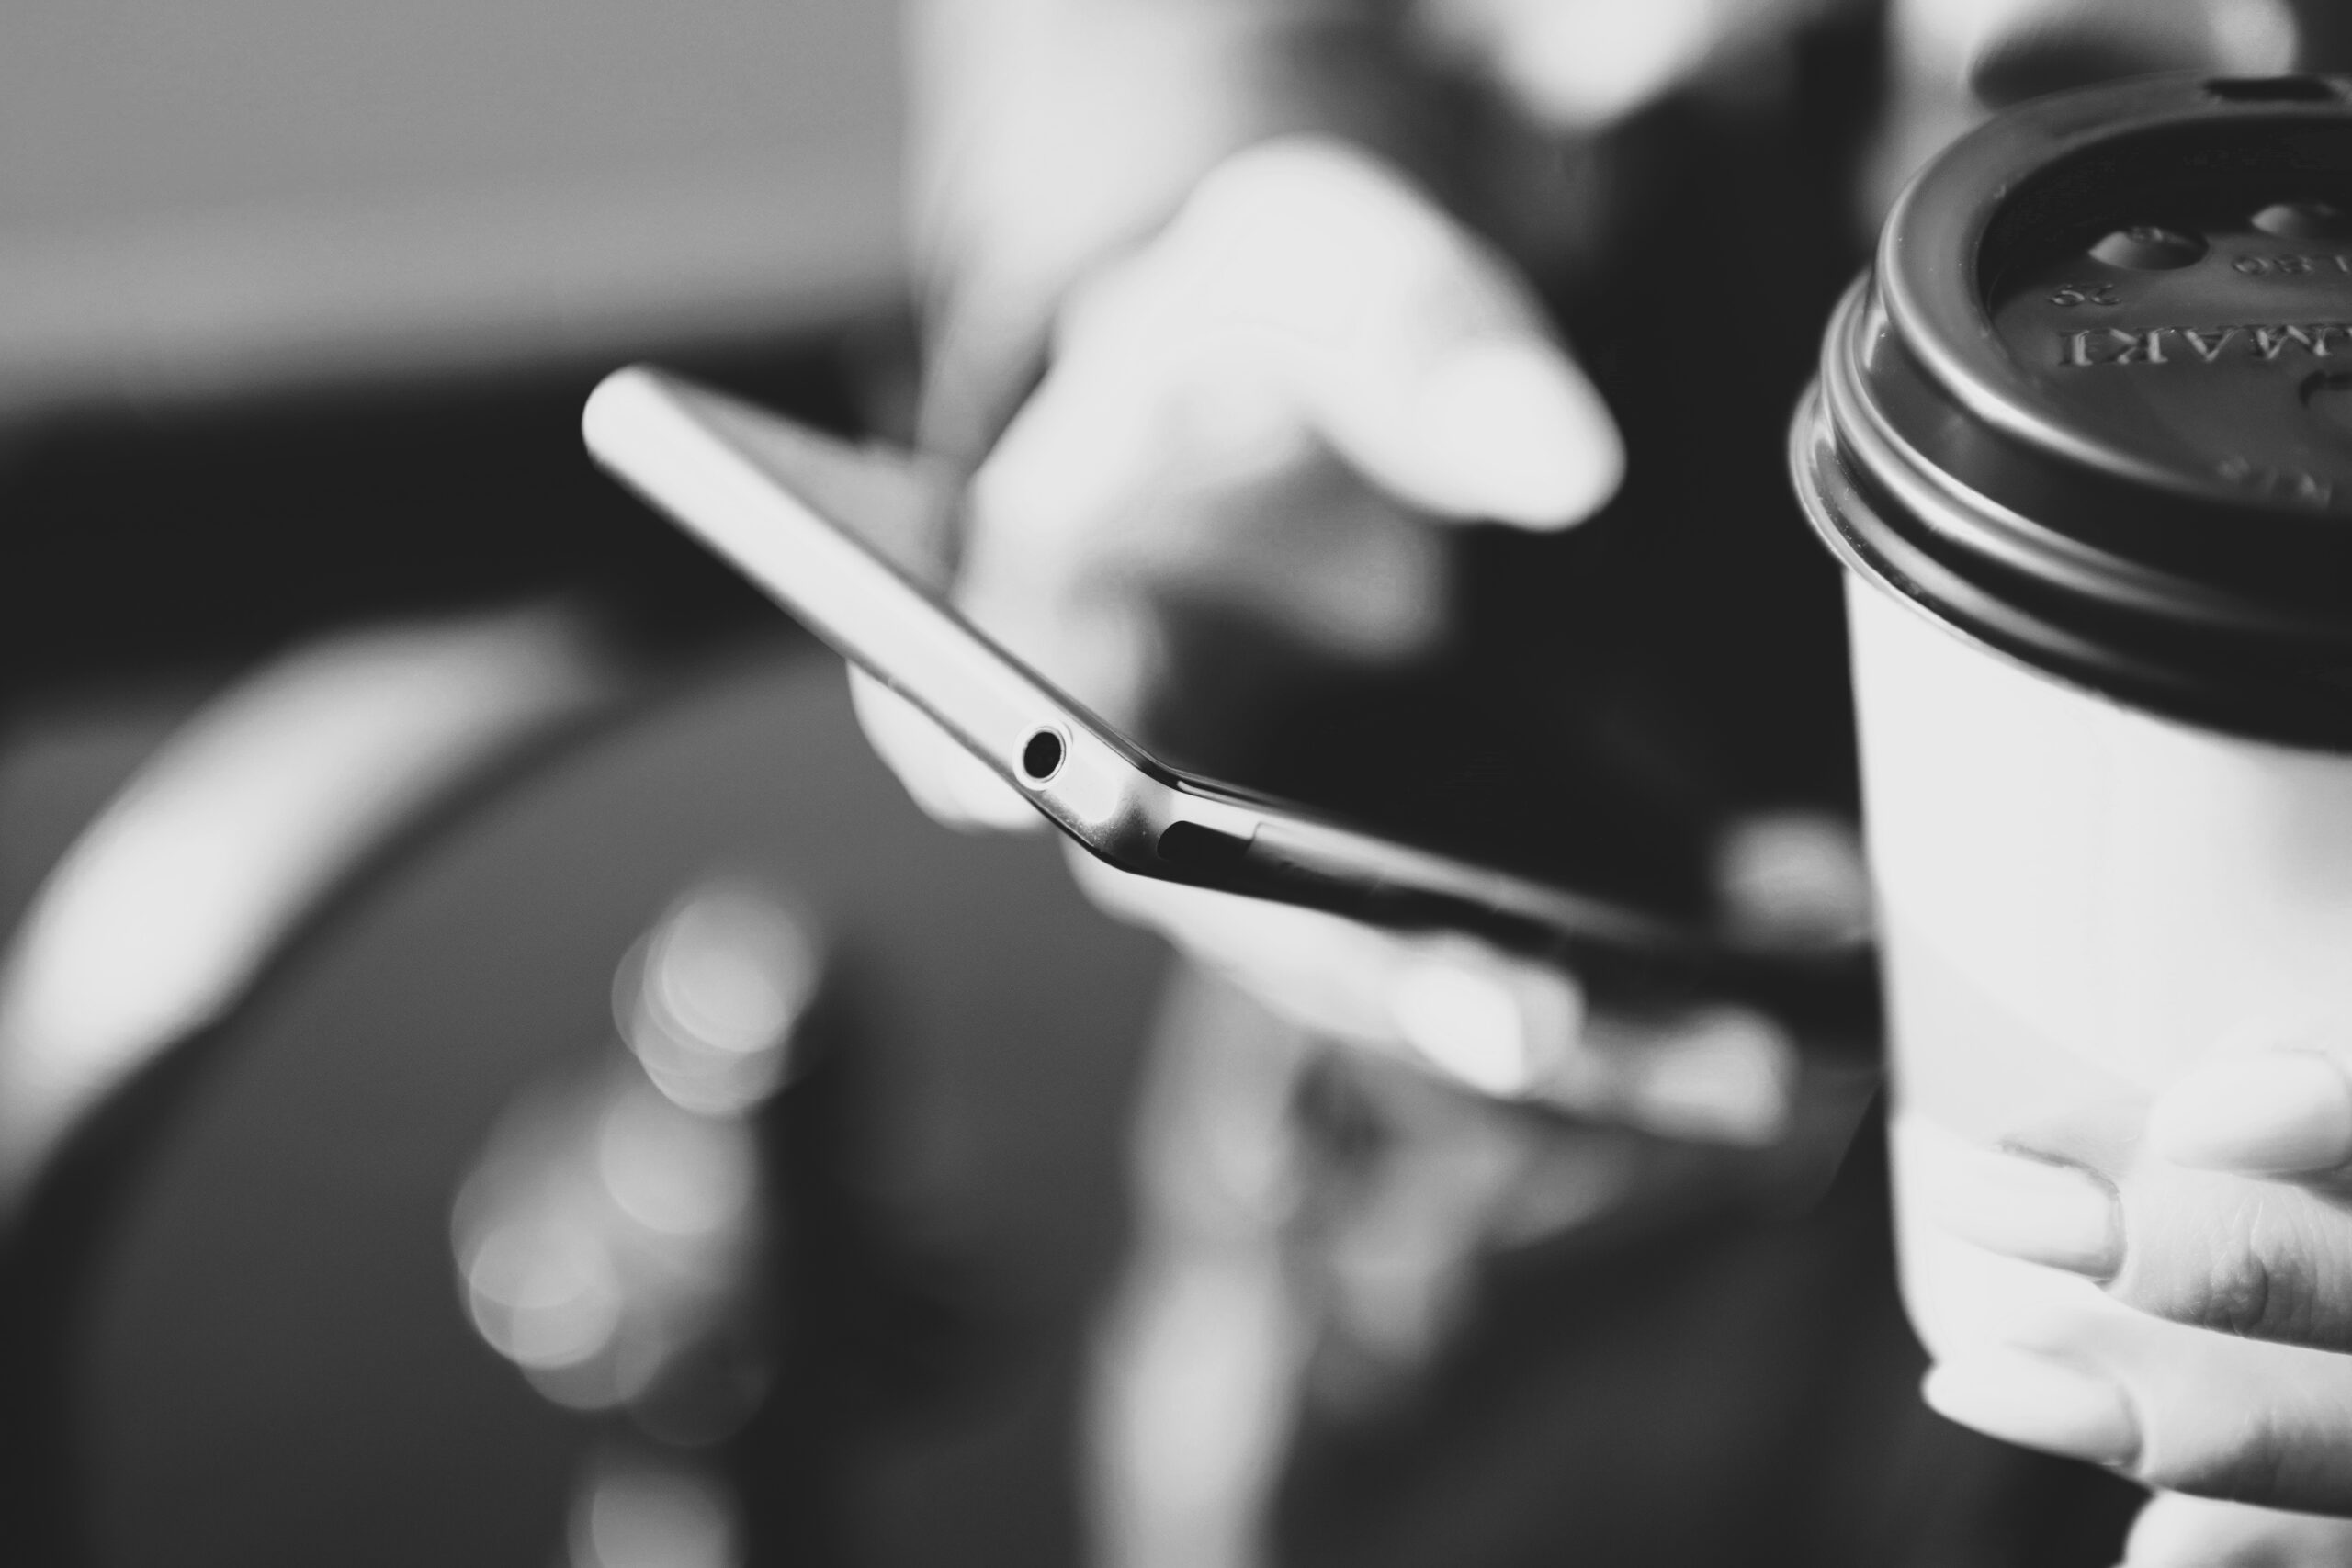 personne tenant son smartphone dans une main et un café dans l'autre